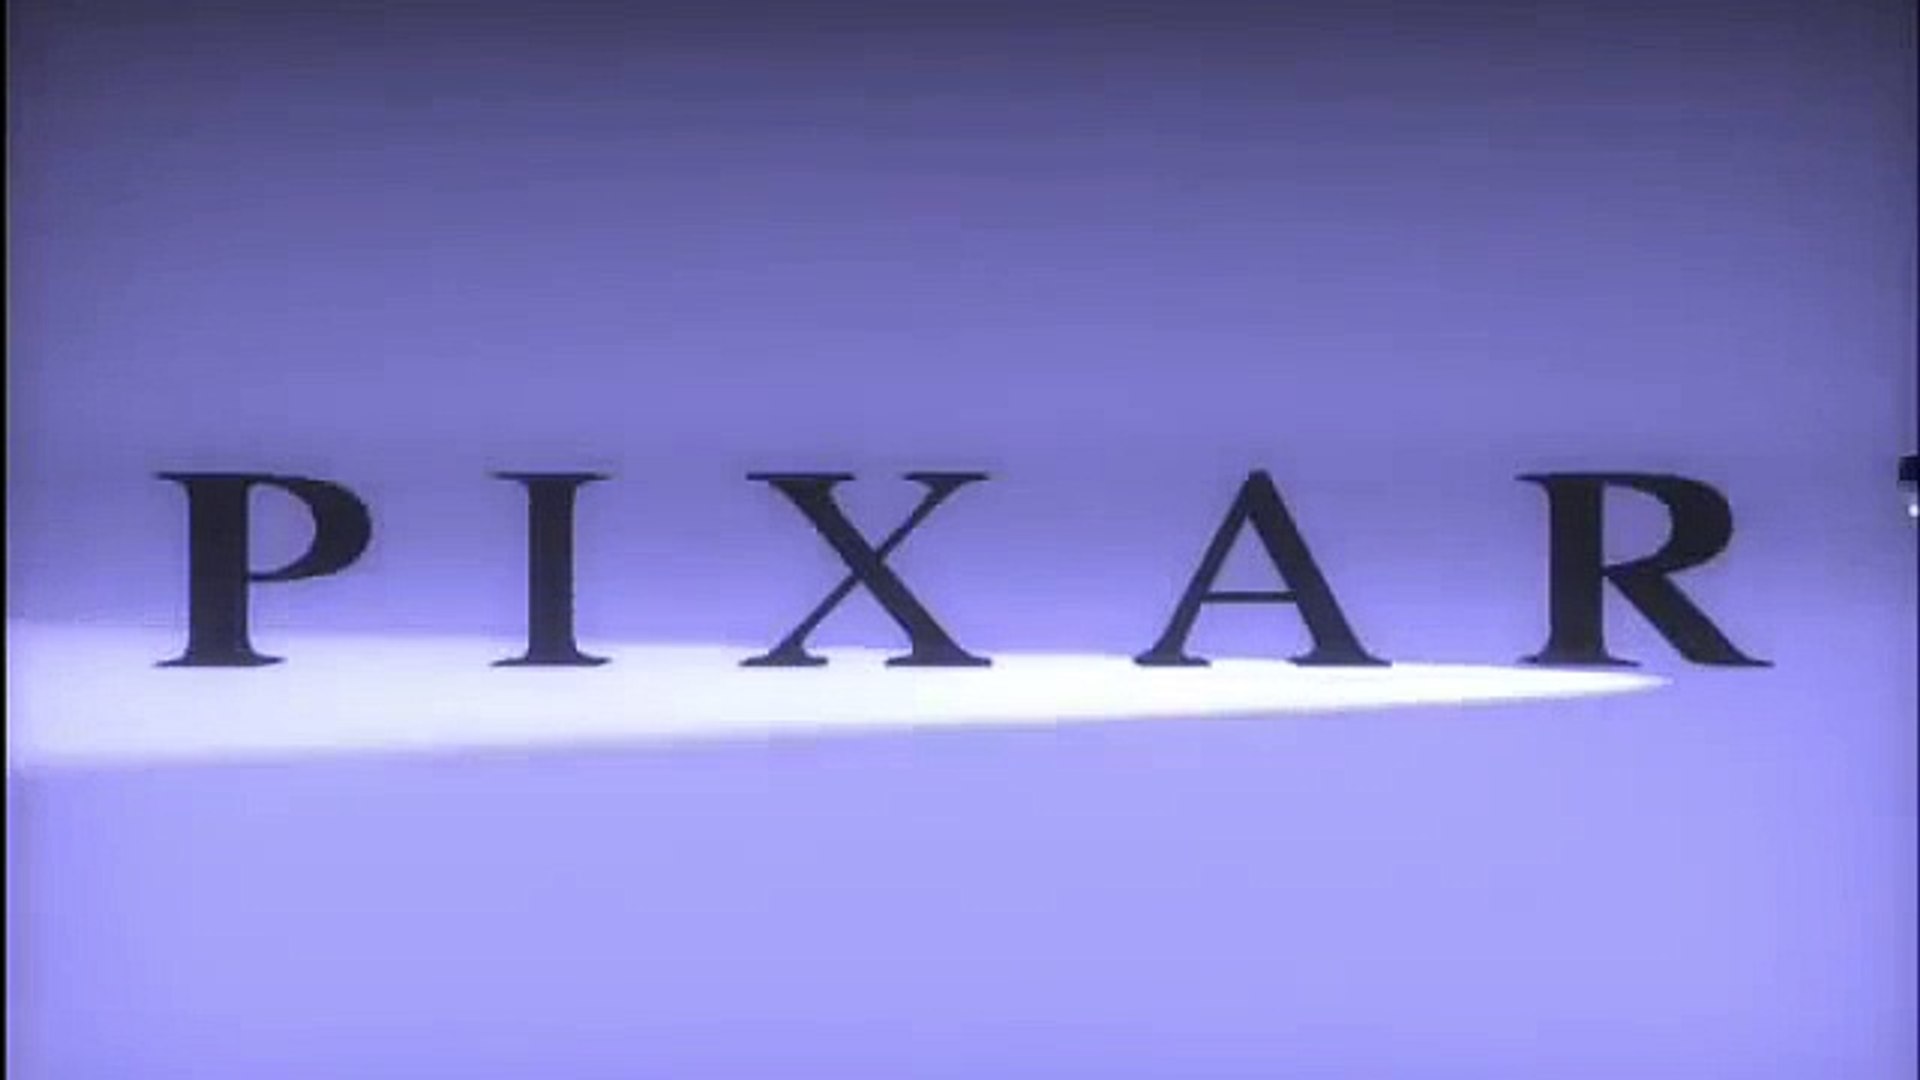 pixar lamp and logo